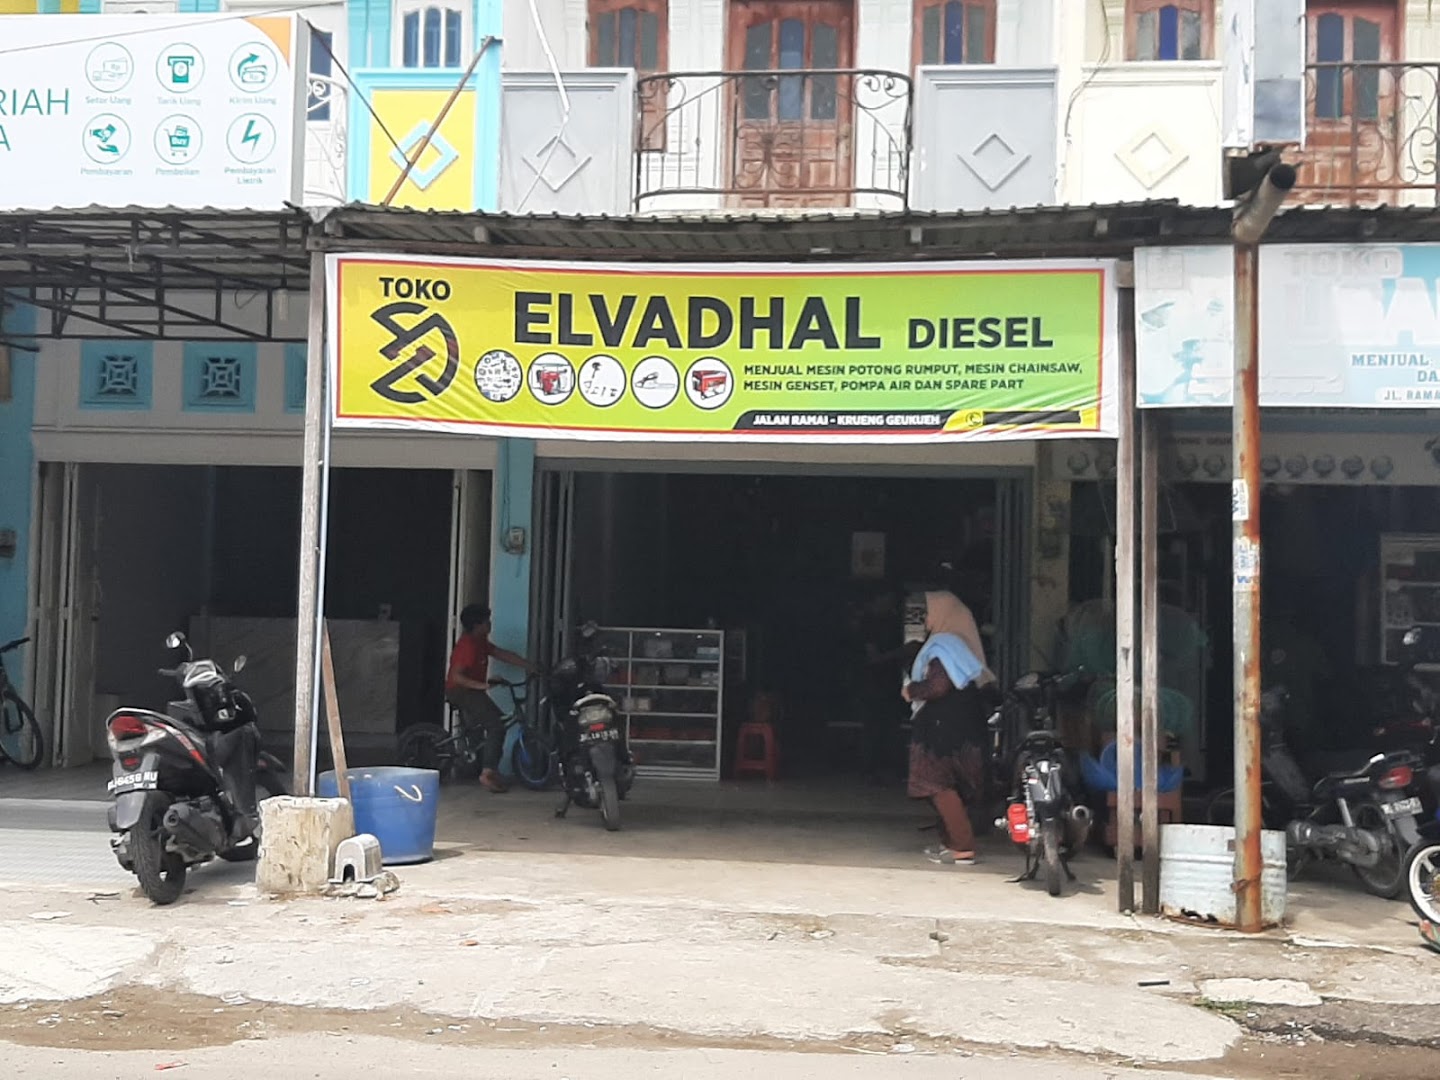 Elvadhal Diesel Photo